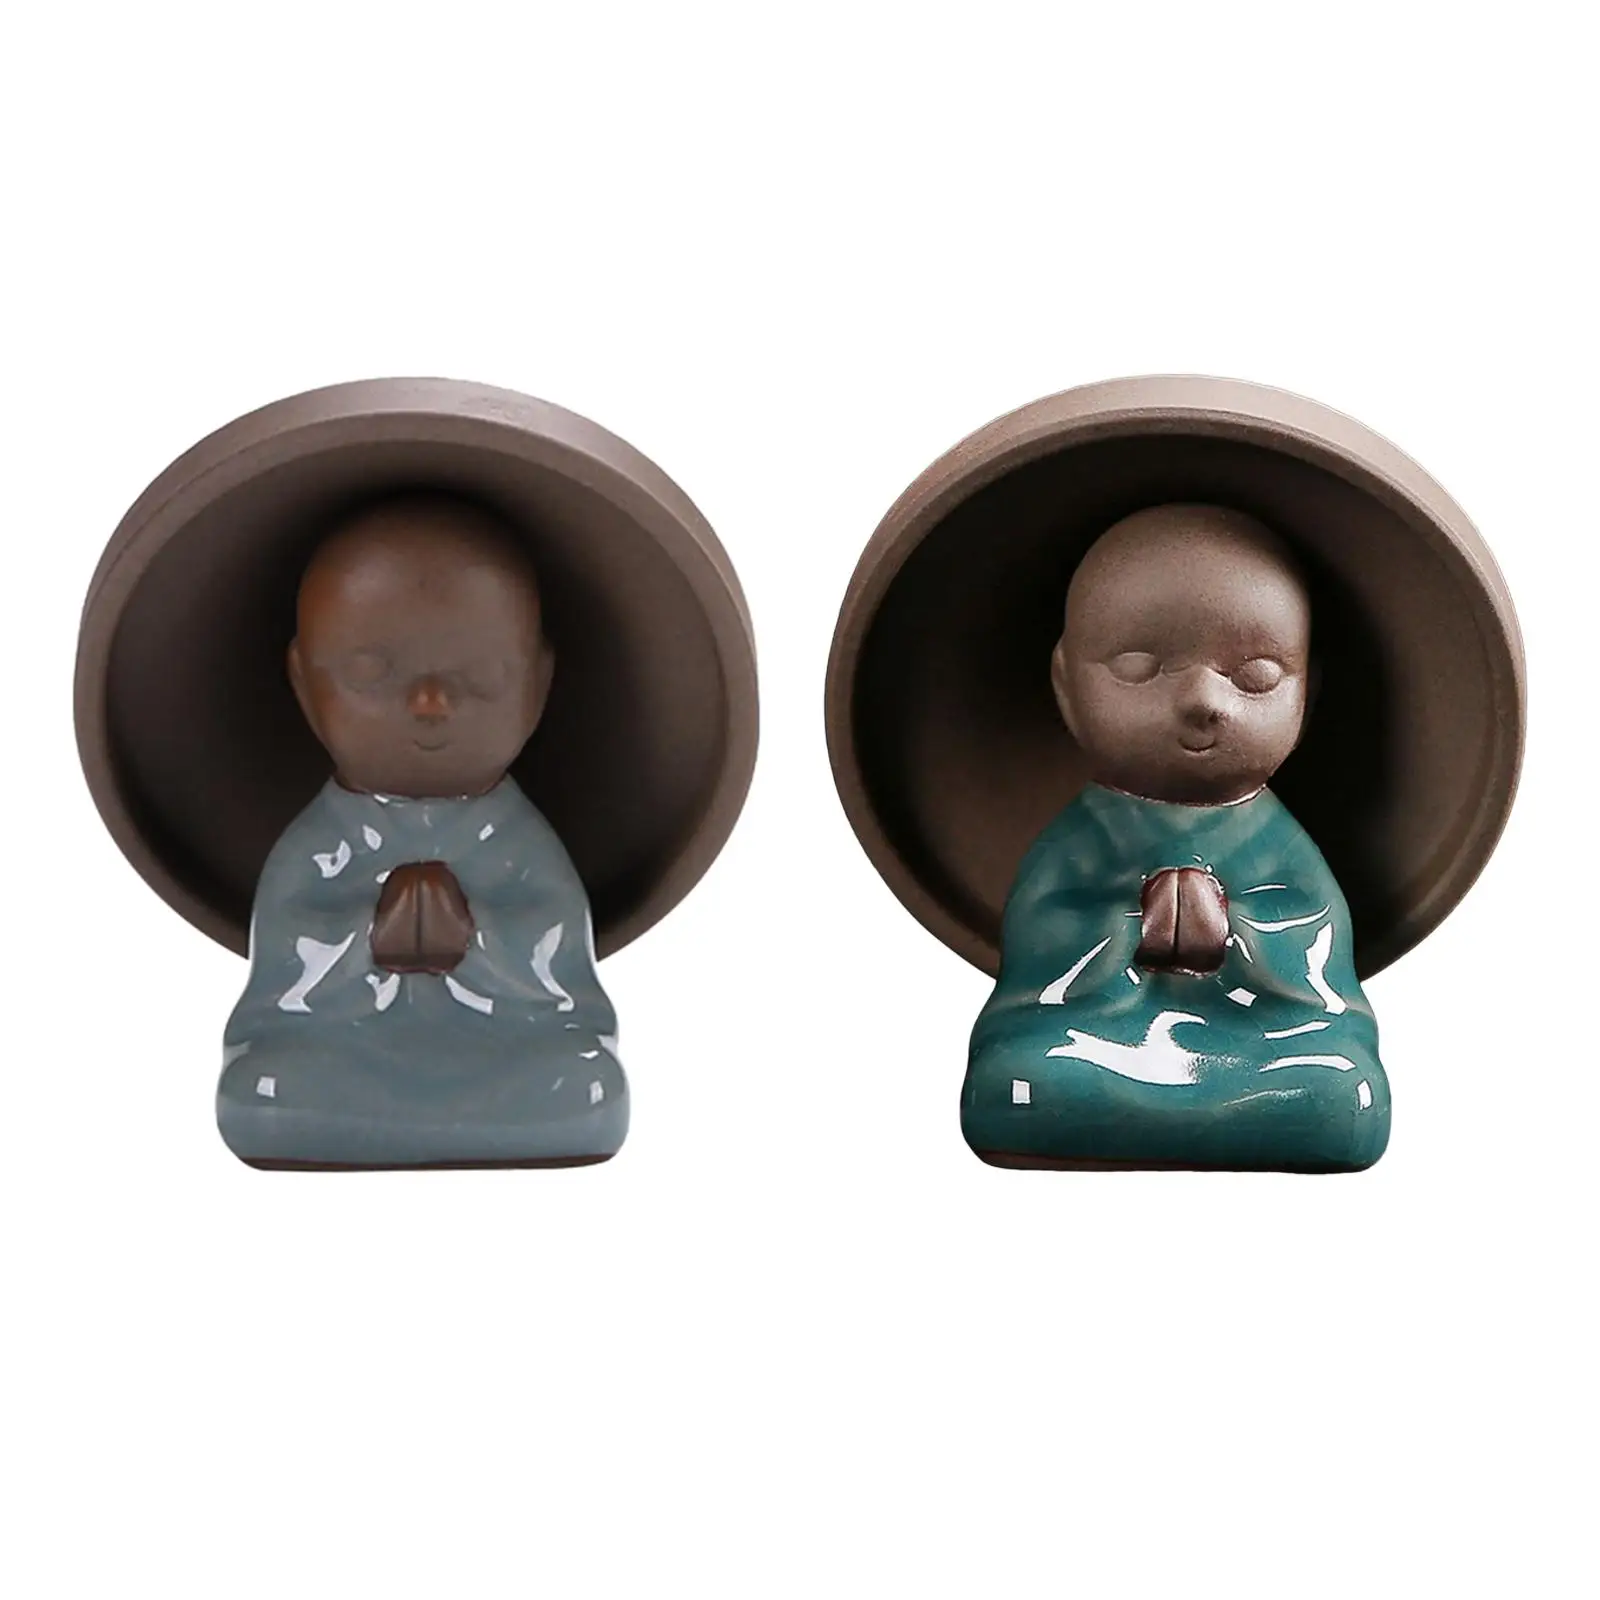 Monk Figures Tea Filter Porcelain Strainer Tea Strainers Tea Filtration Decor for Cafe Shop Gifts